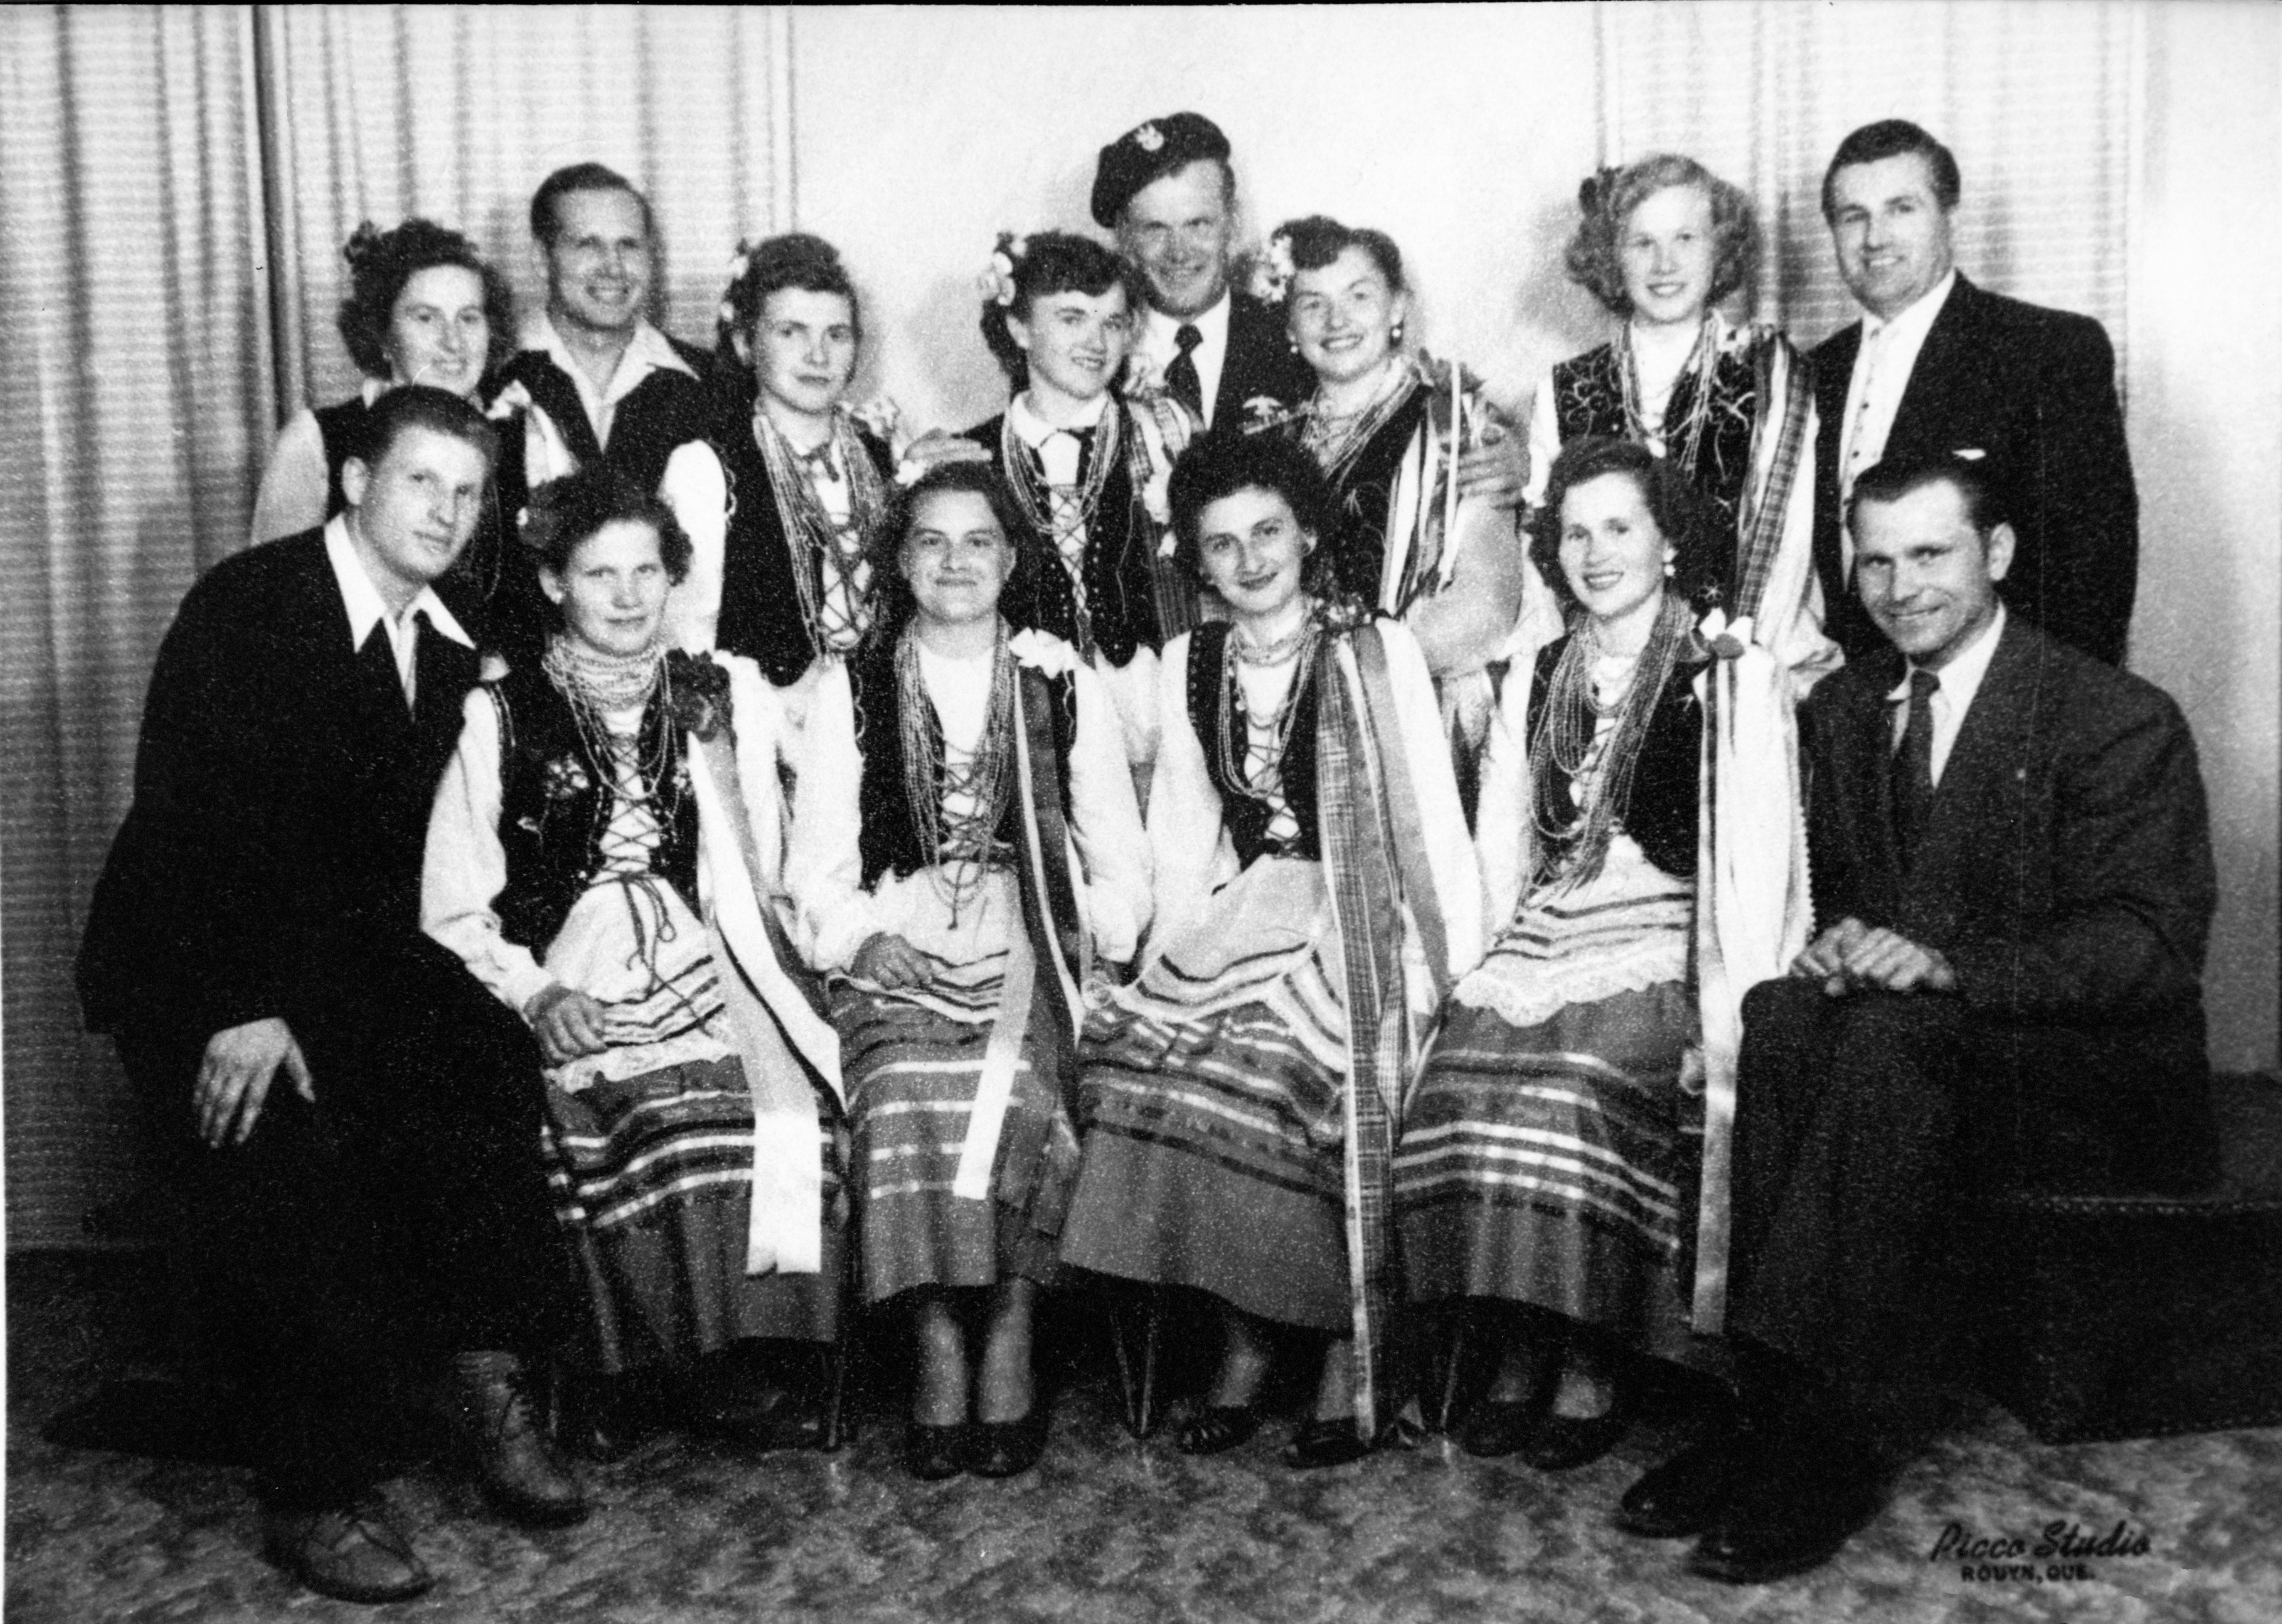 Photographie en noir et blanc de quatorze personnes, dont neuf femmes en habit traditionnel ukrainien et cinq hommes en habit chic.